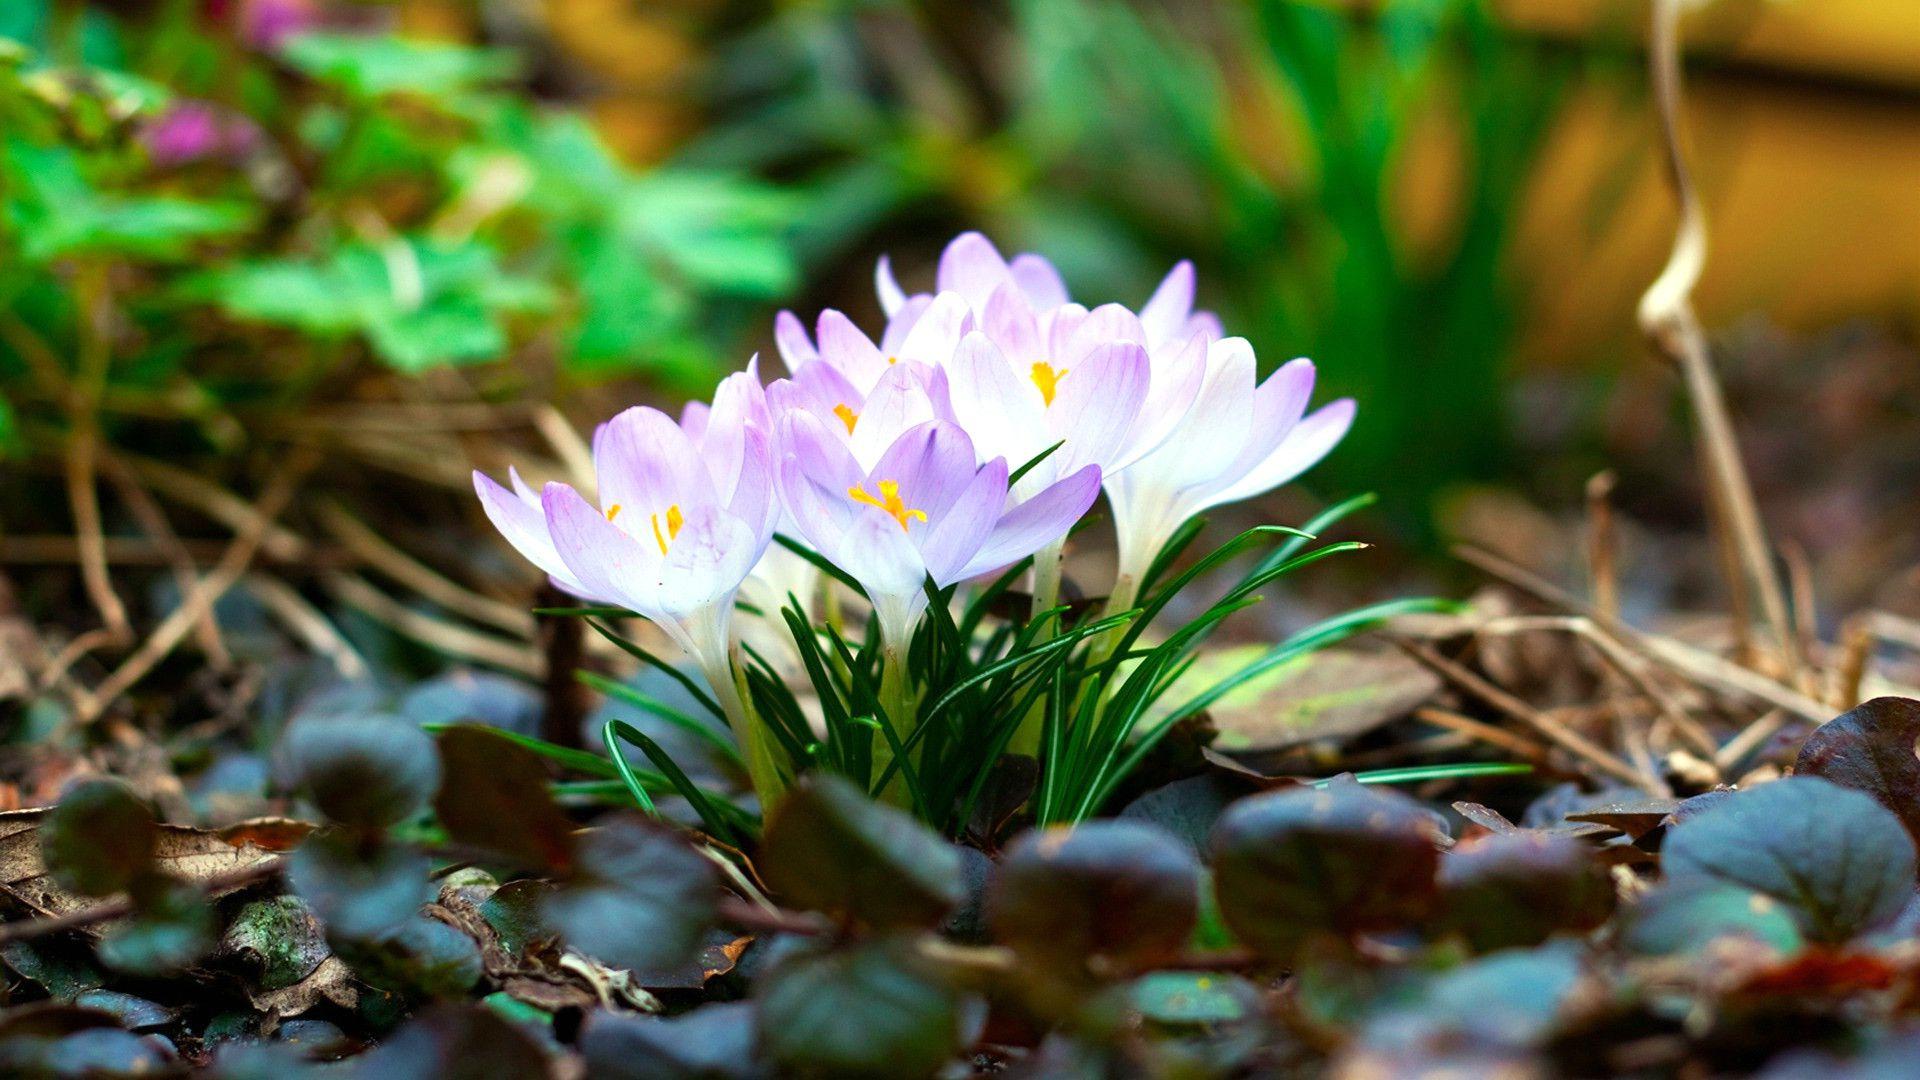 Hoa xuân sớm (Early spring flowers): Hoa xuân sớm mang lại một màu sắc và hương thơm tươi mới cho cuộc sống. Hãy chiêm ngưỡng những loại hoa đậm hương đẹp như hoa anh đào, hoa đào, hoa đào rừng... bắt đầu nở rộ trên những ngả đường và công viên.